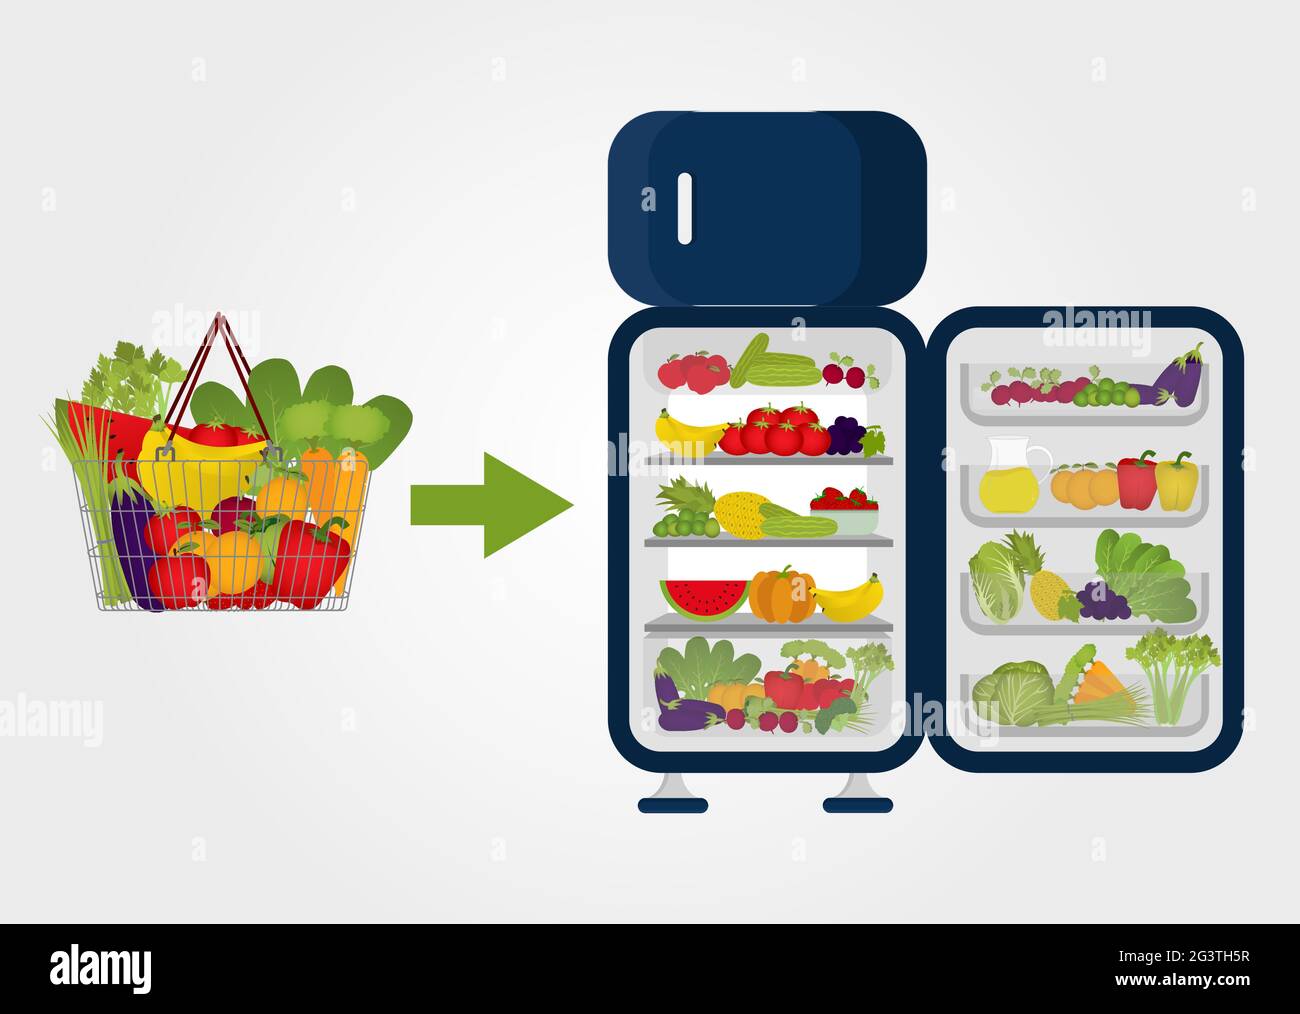 Lebensmittelkorb voll mit Obst und Gemüse und Pfeil zeigt auf den Kühlschrank voll mit Obst und Gemüse. Käufe. Konservierung von Lebensmitteln. Kein Fleisch und n Stock Vektor